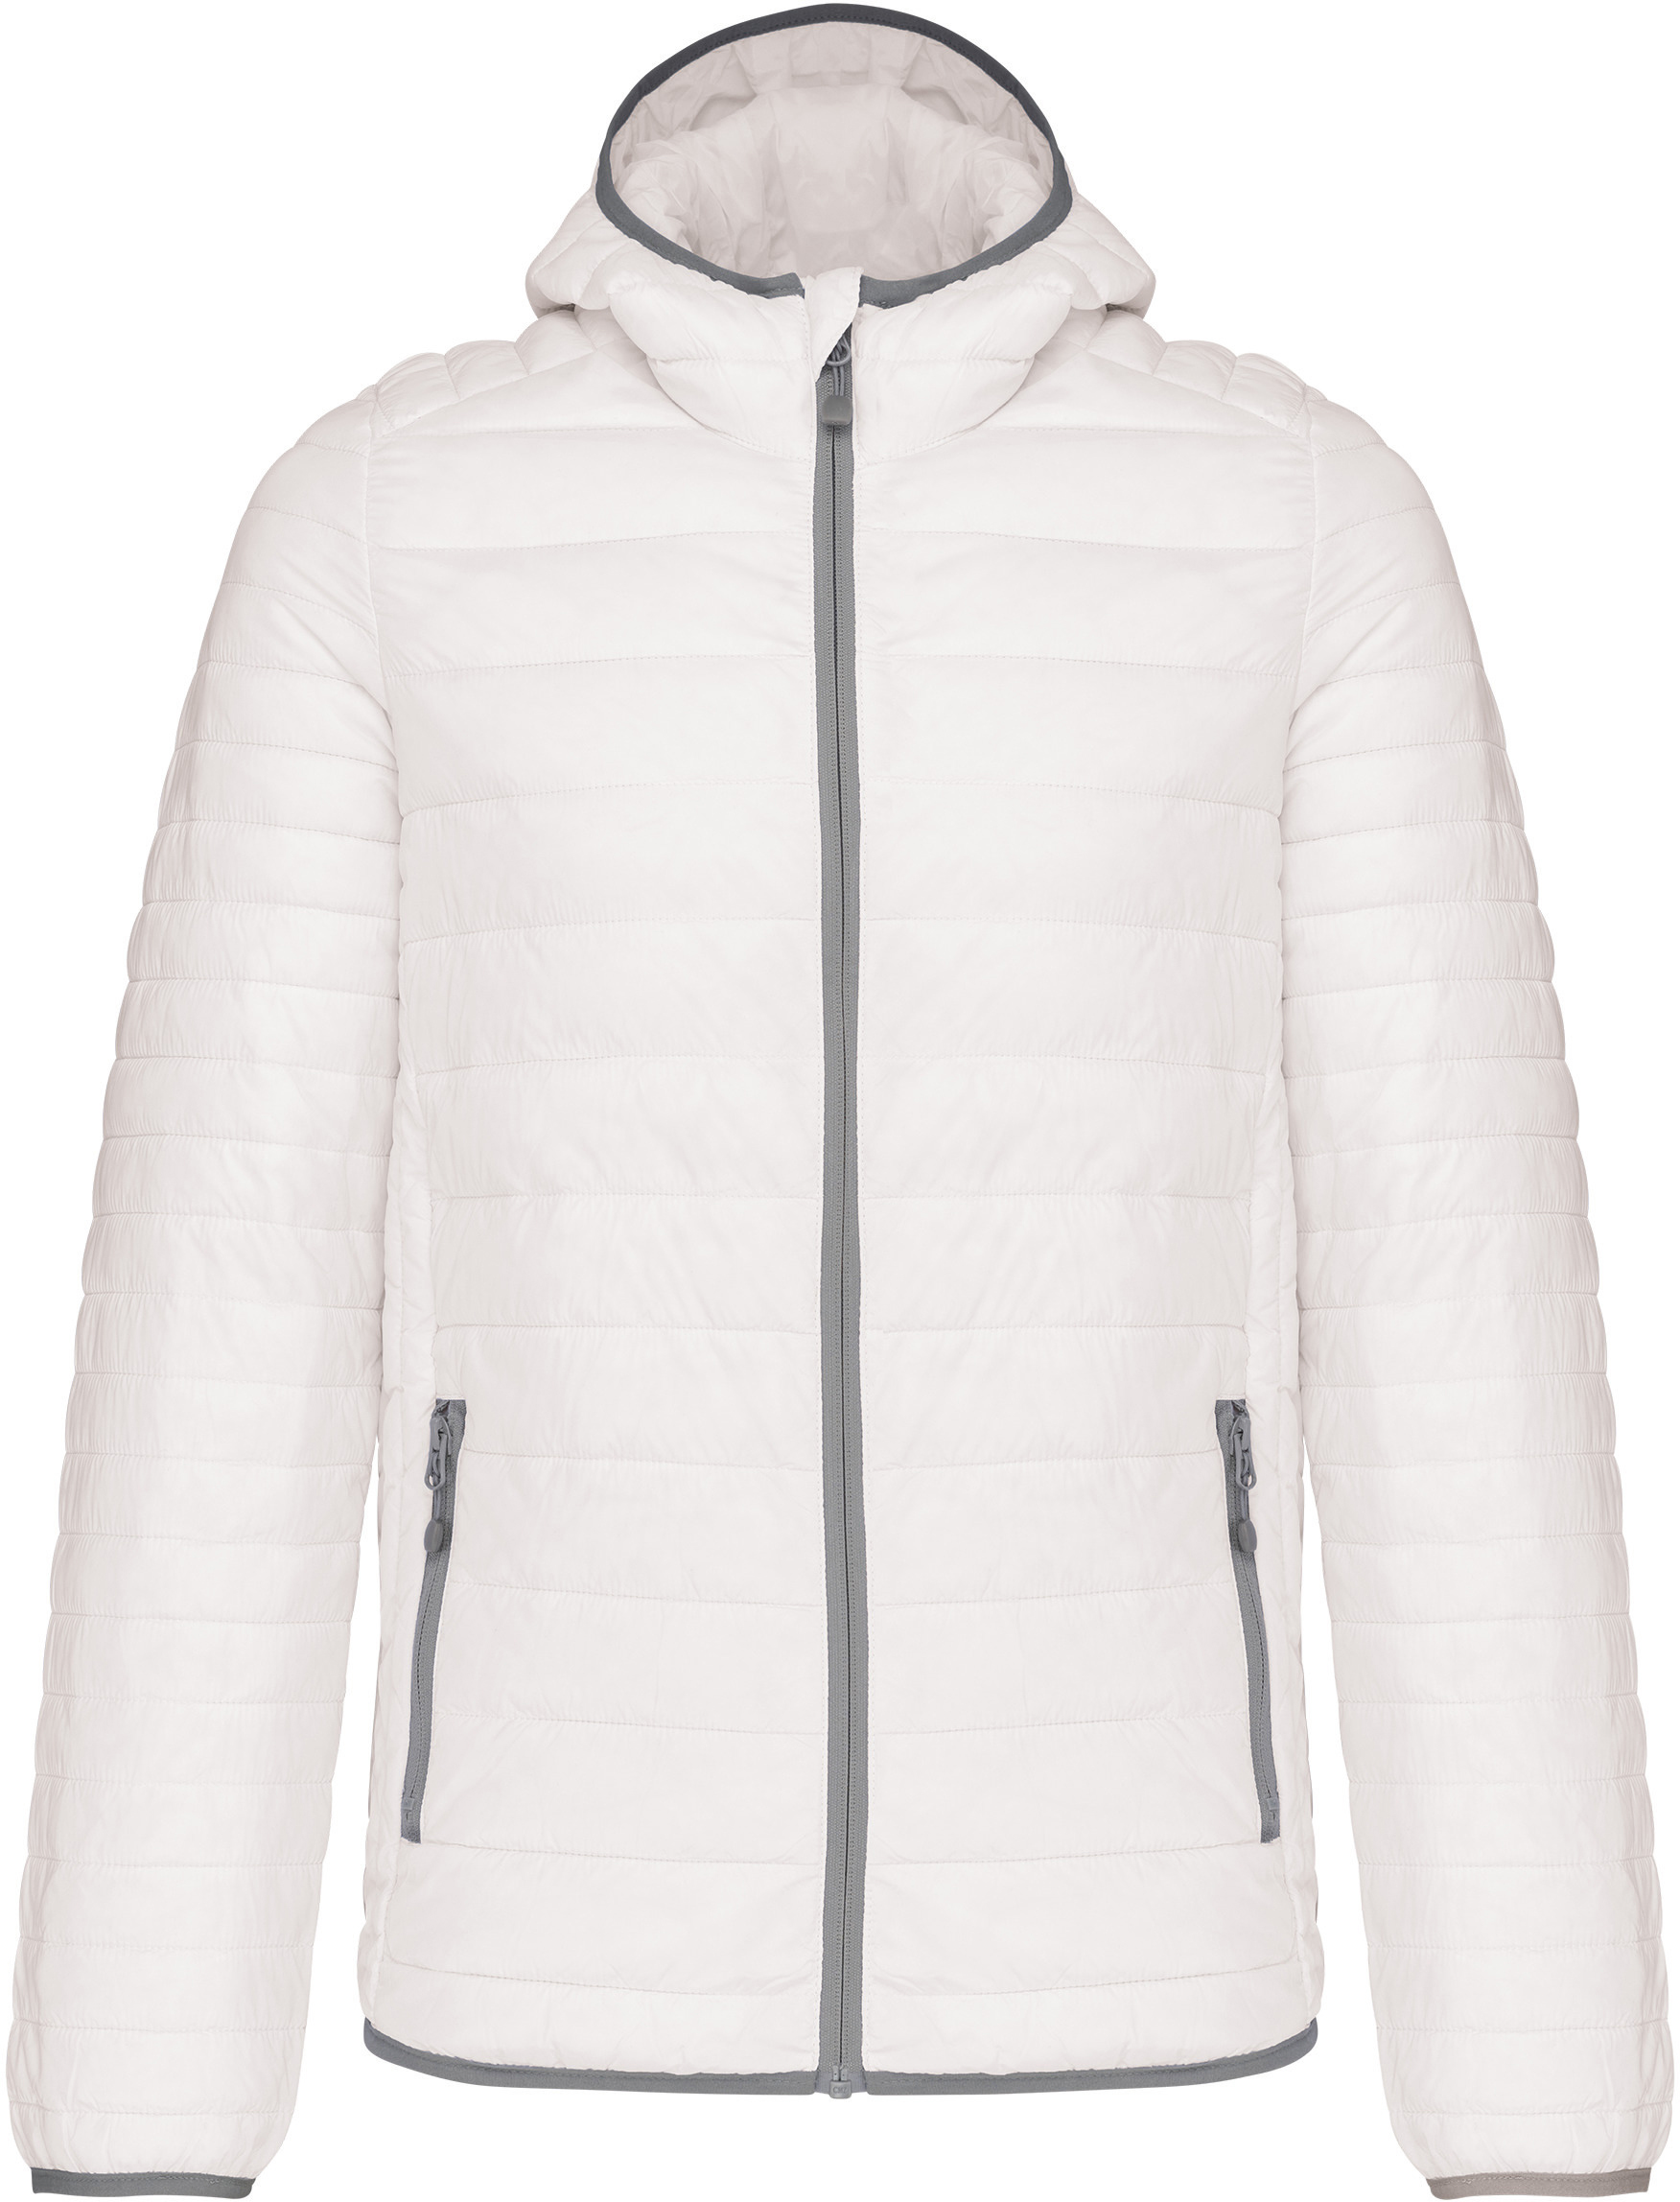 Pánská lehká zateplená bunda Down Jacket K6110 Barva: bílá, Velikost: M